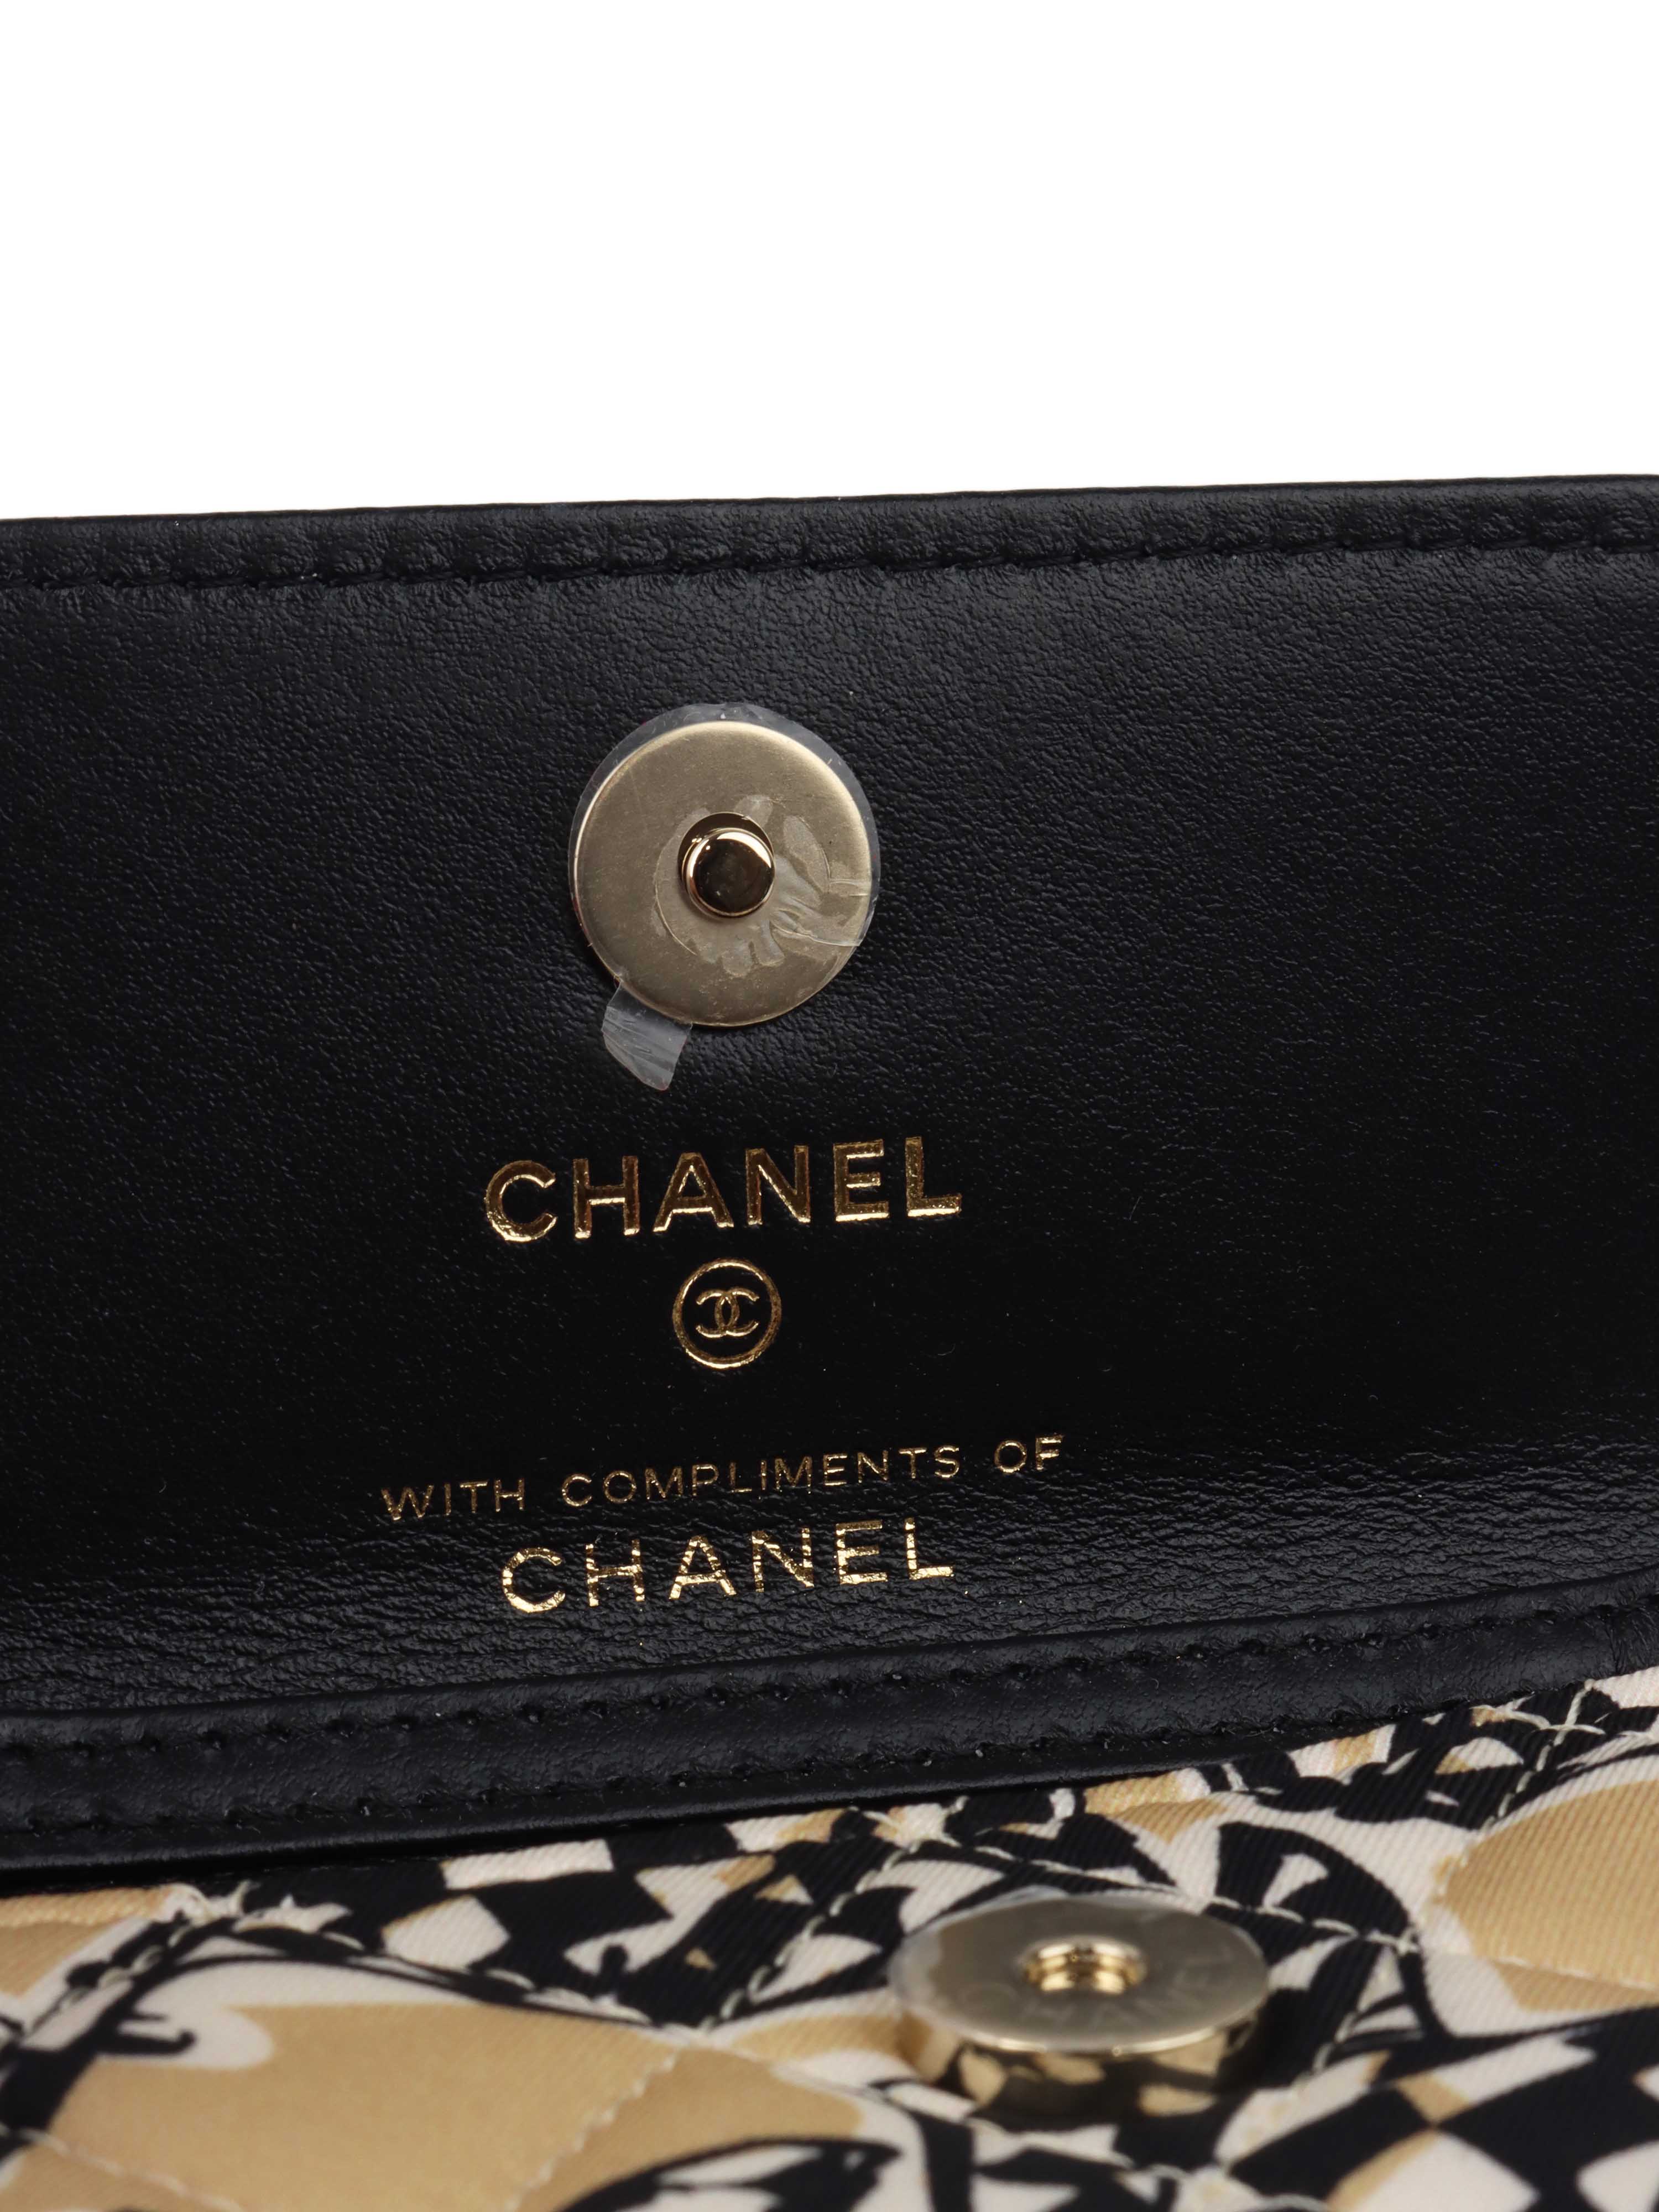 Chanel Mini Chain Pouch.